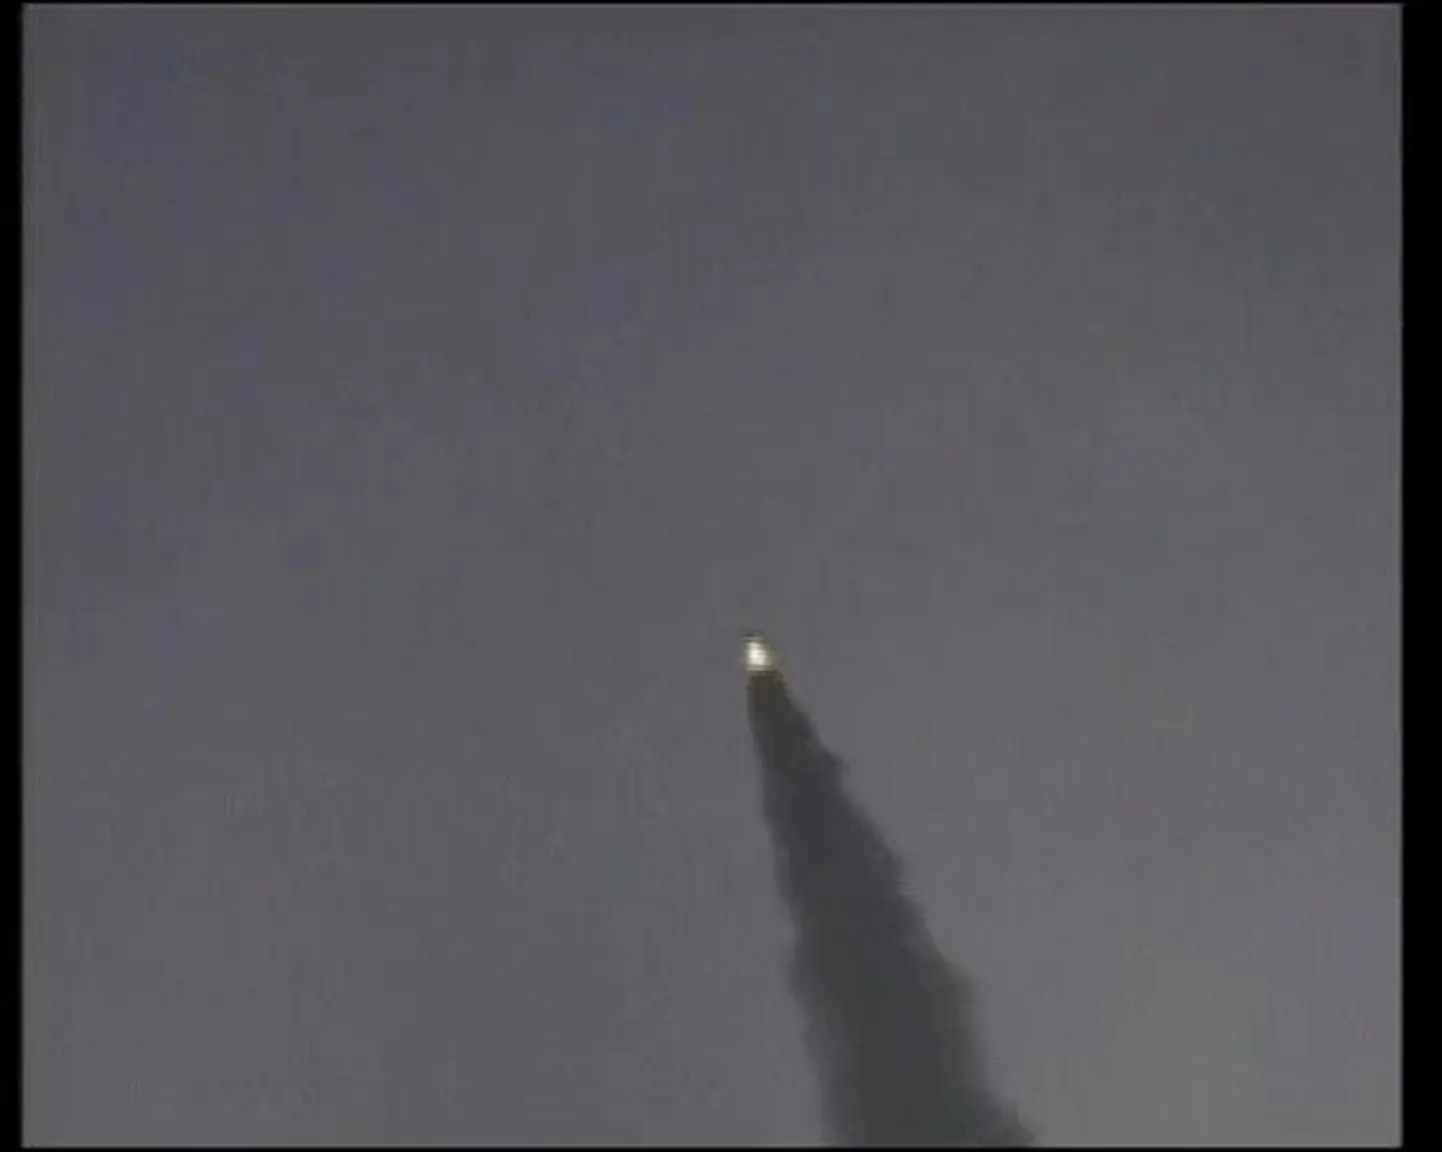 Põhja-Korea valmistub väidetavalt raketikatsetuseks